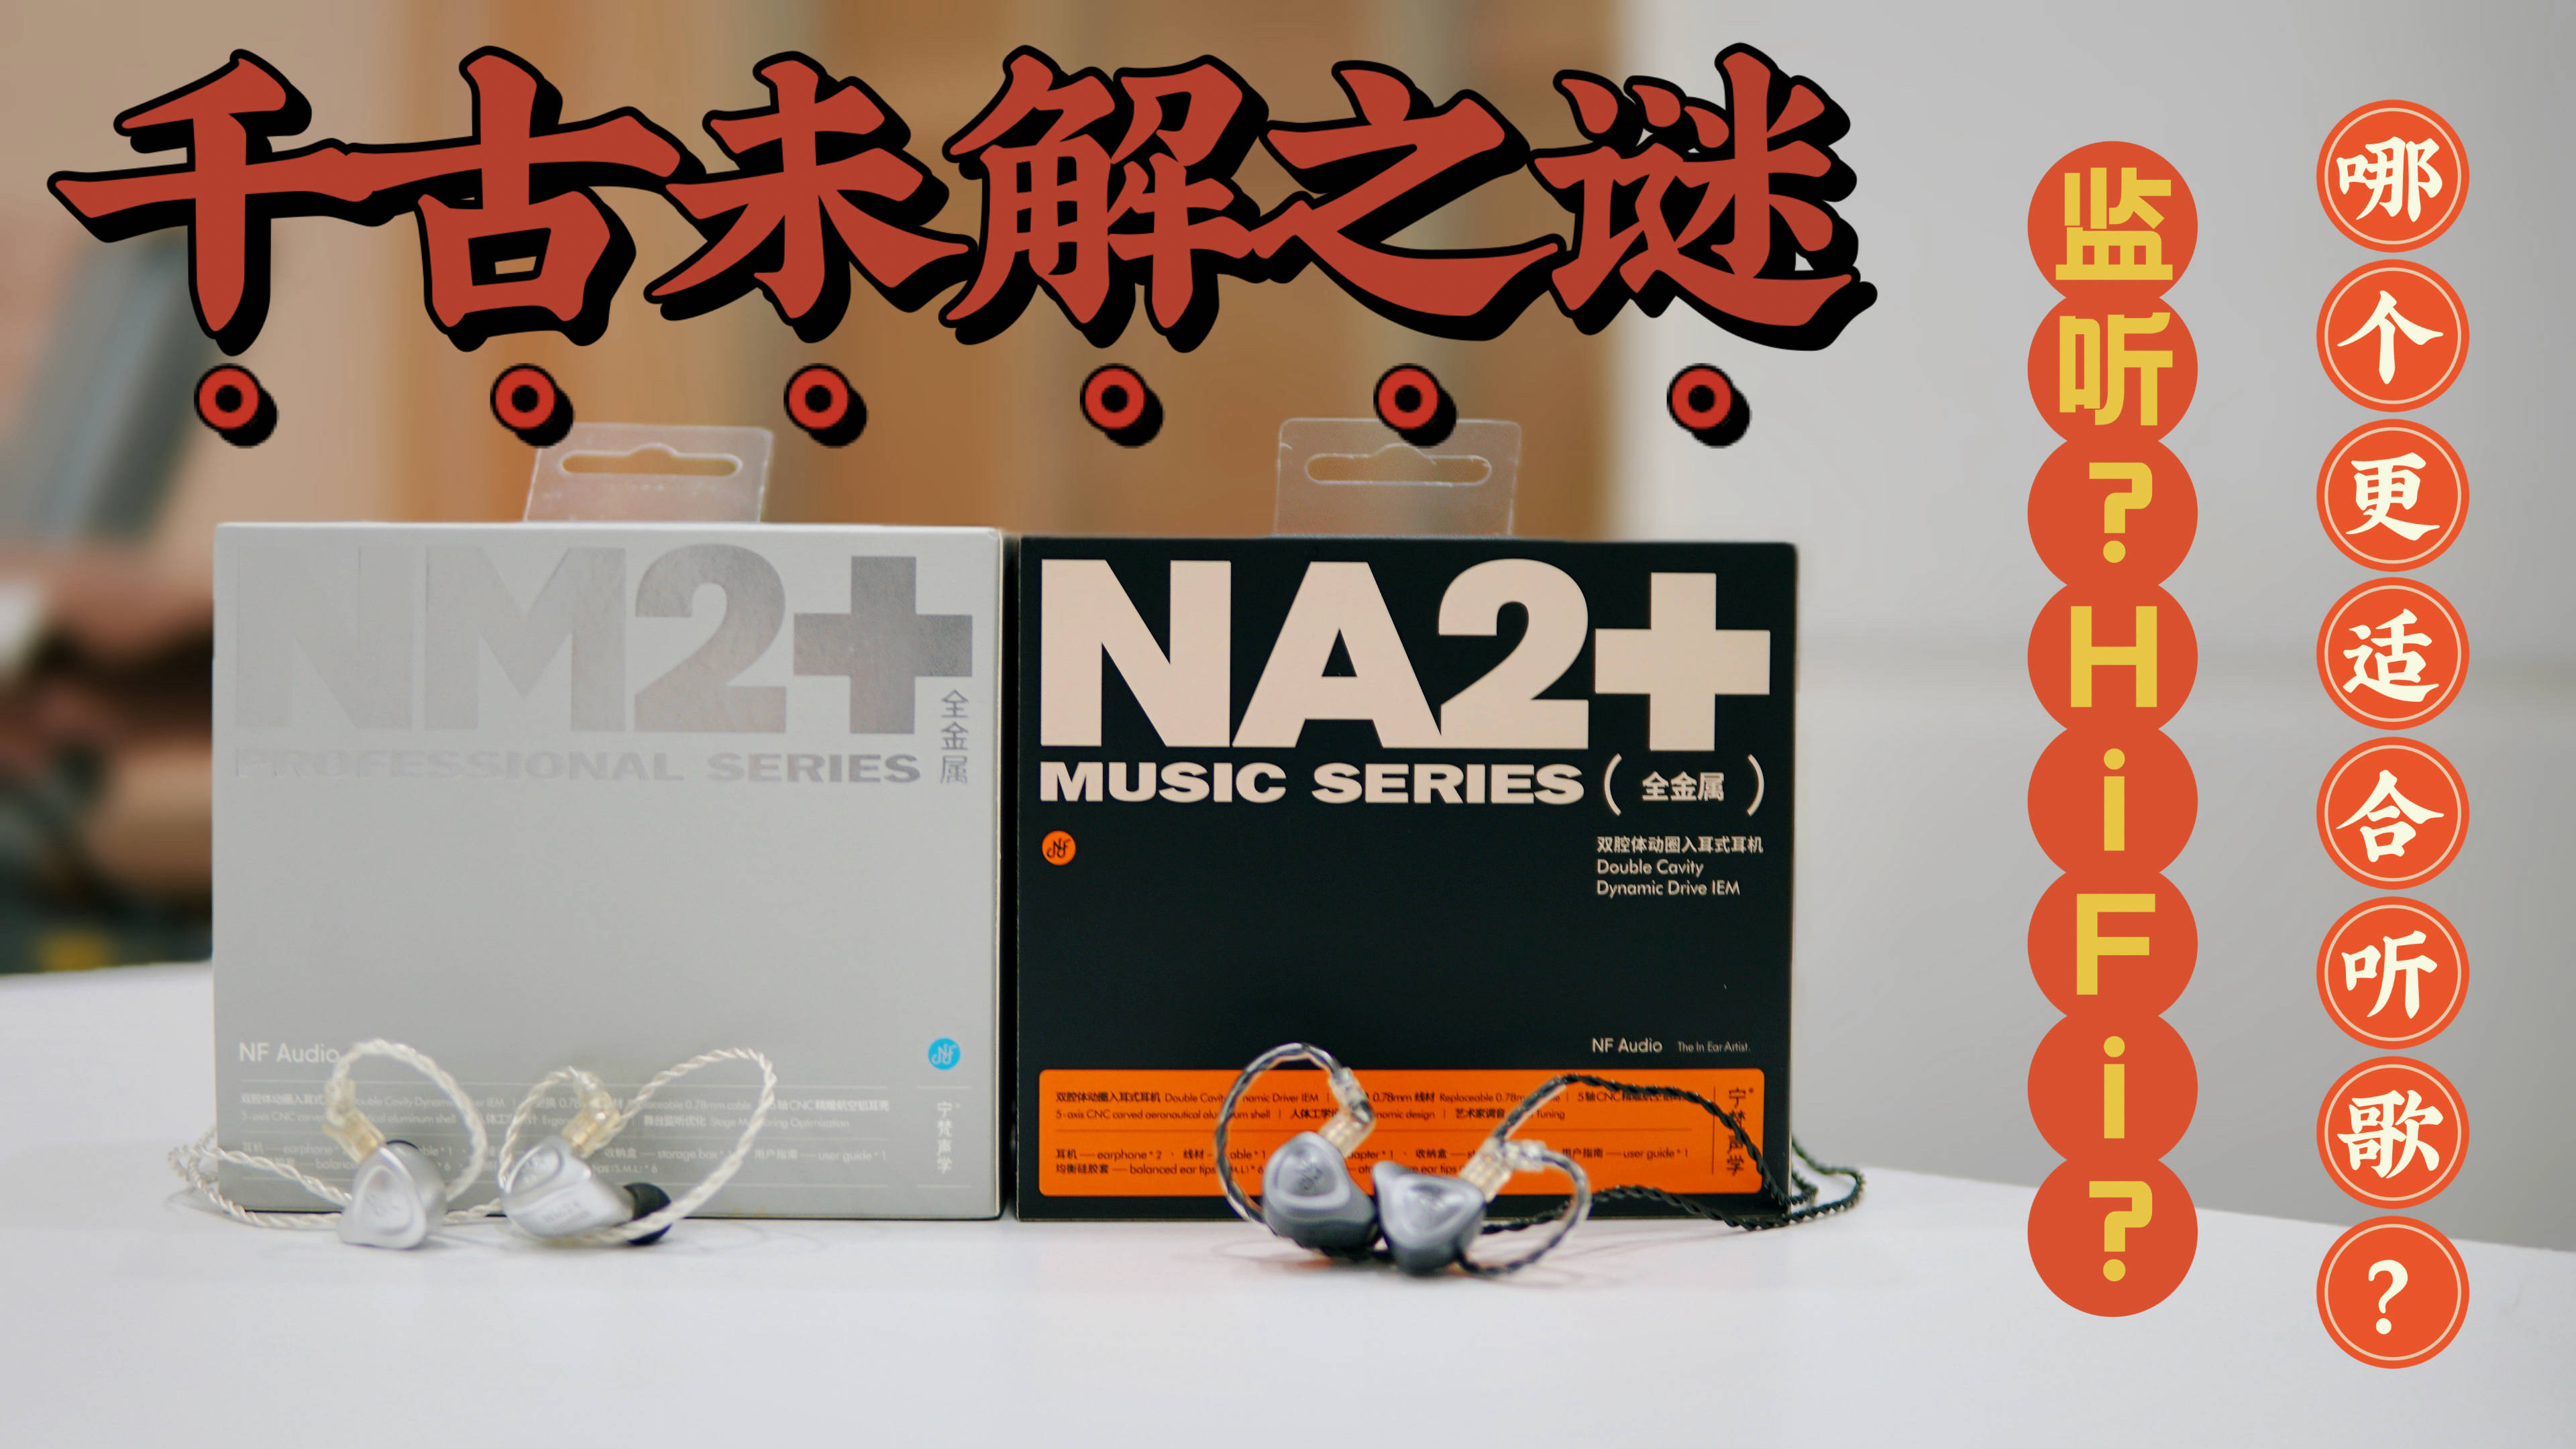 监听耳机与HiFi耳机哪个更适合欣赏音乐？宁梵NM2+与NA2+声音区别解析